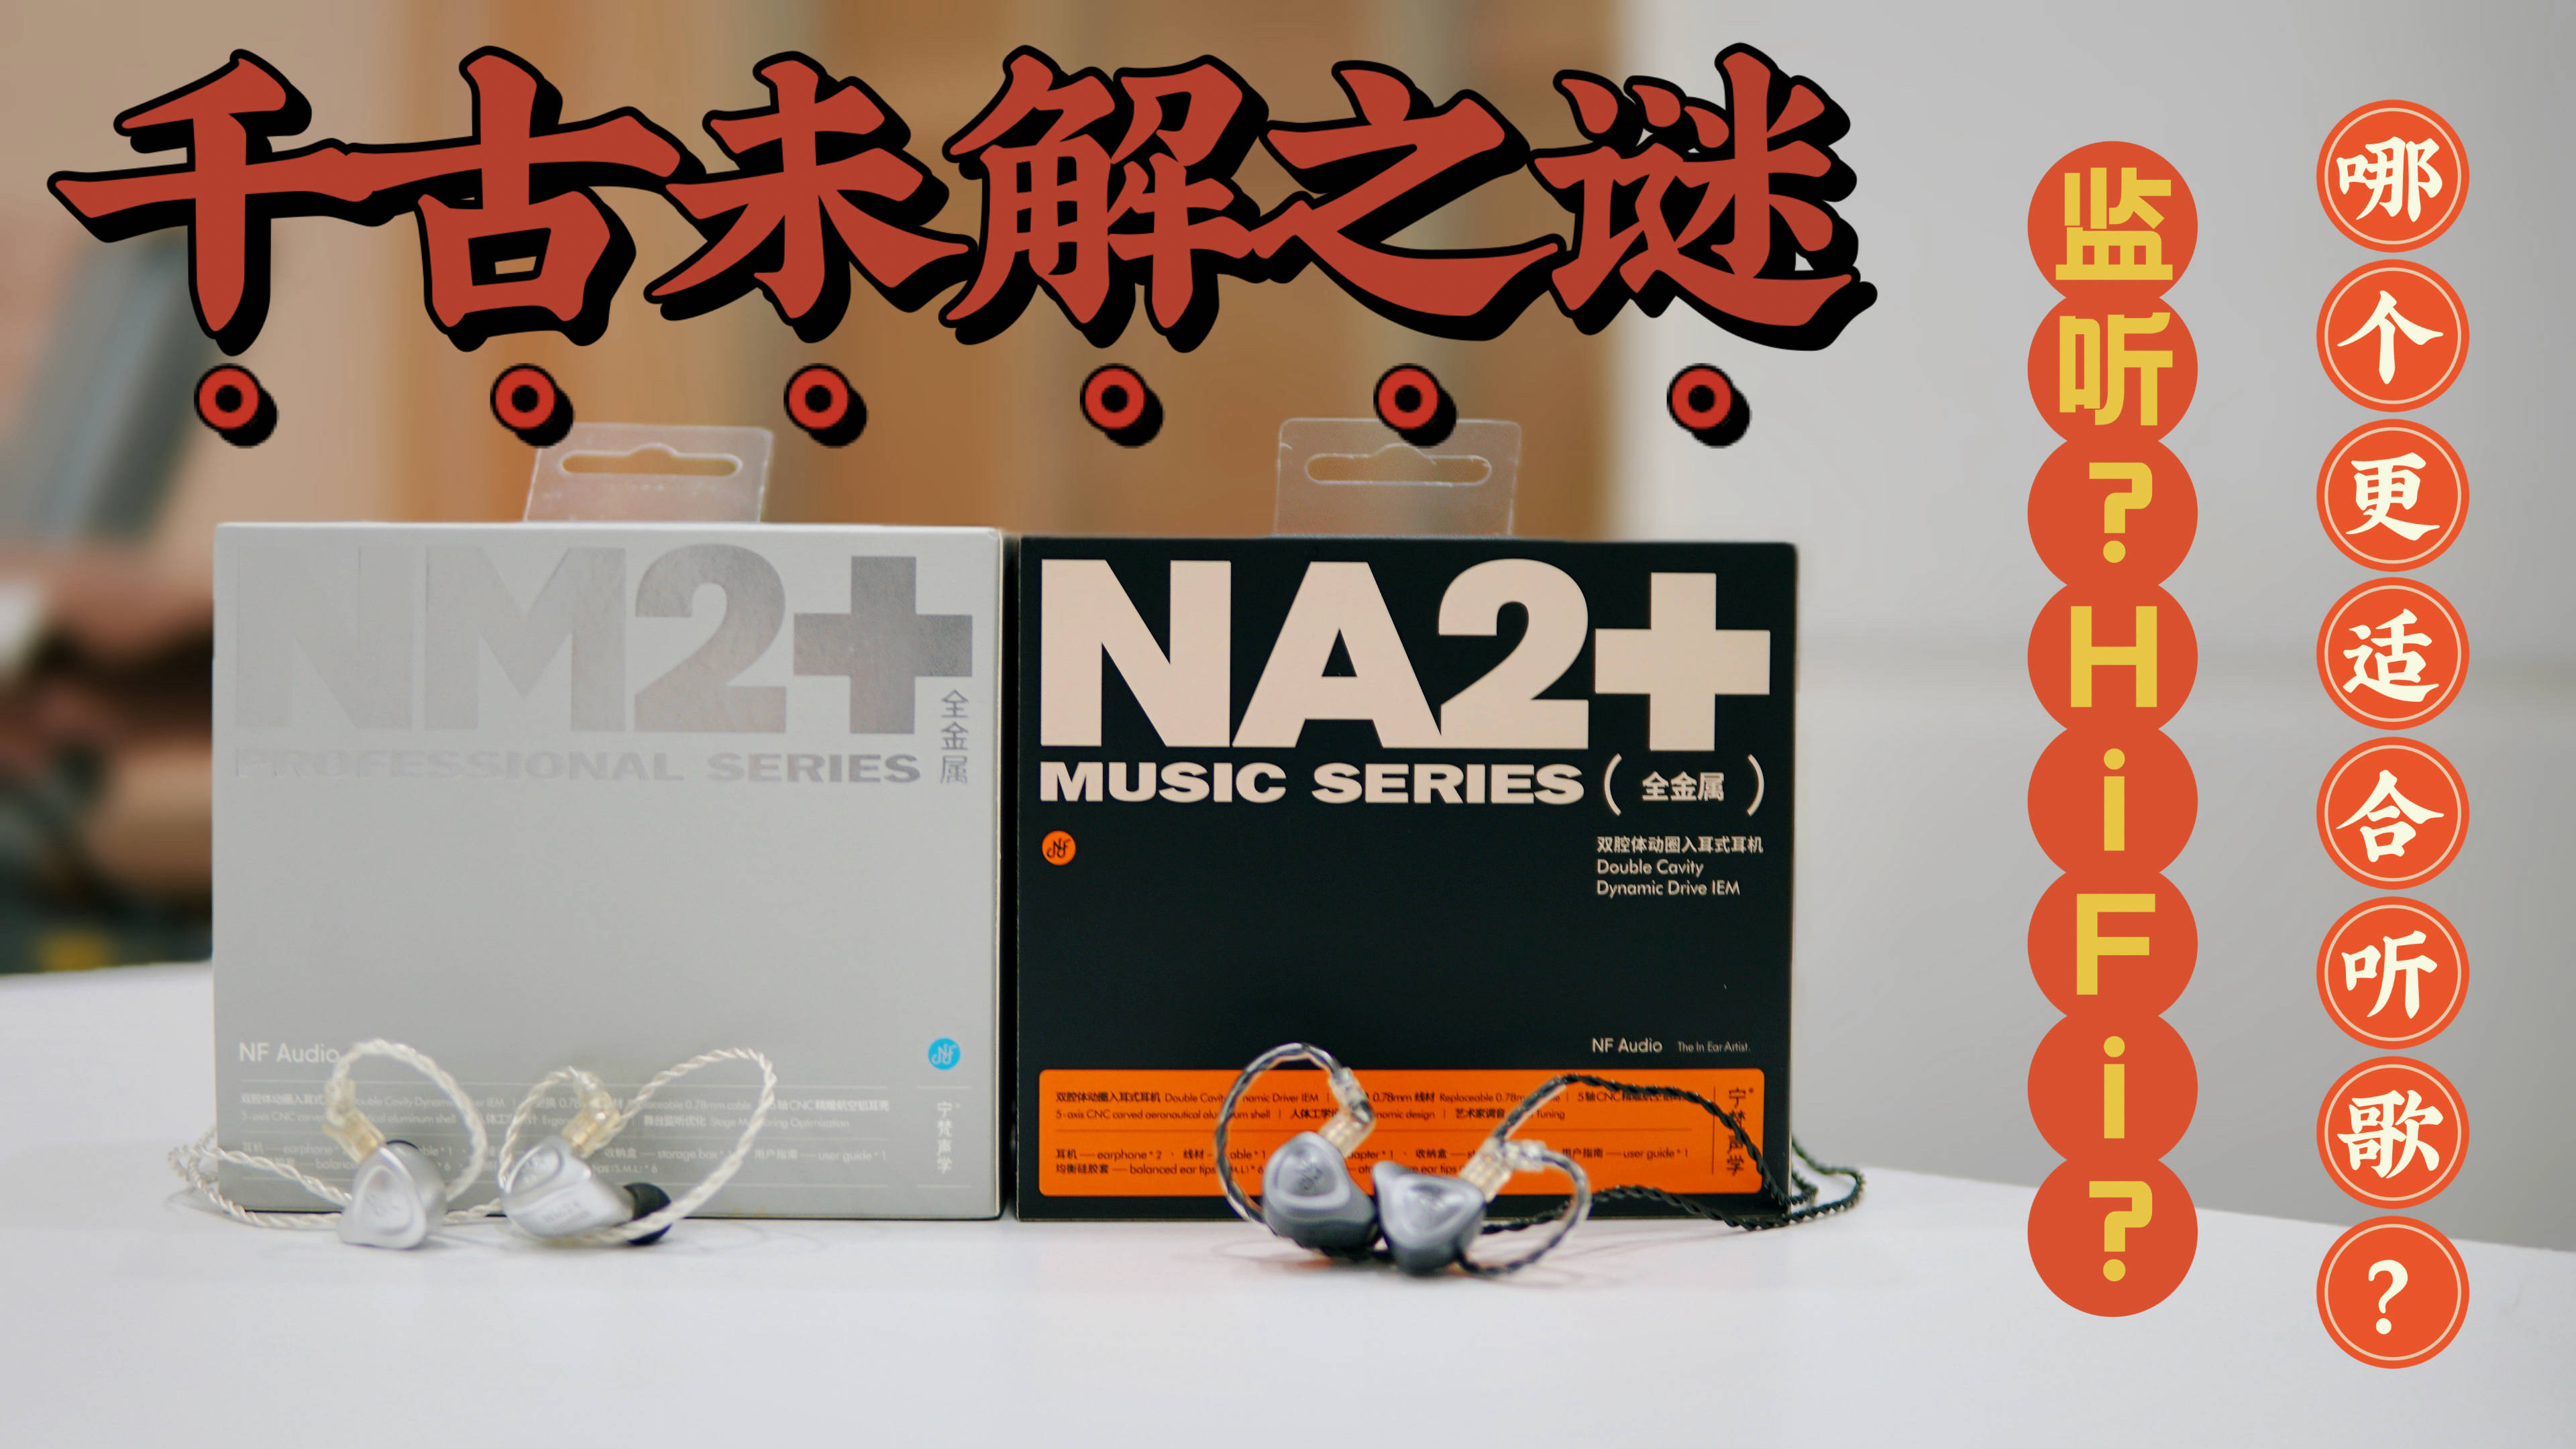 监听耳机与HiFi耳机哪个更适合欣赏音乐？宁梵NM2+与NA2+声音区别解析